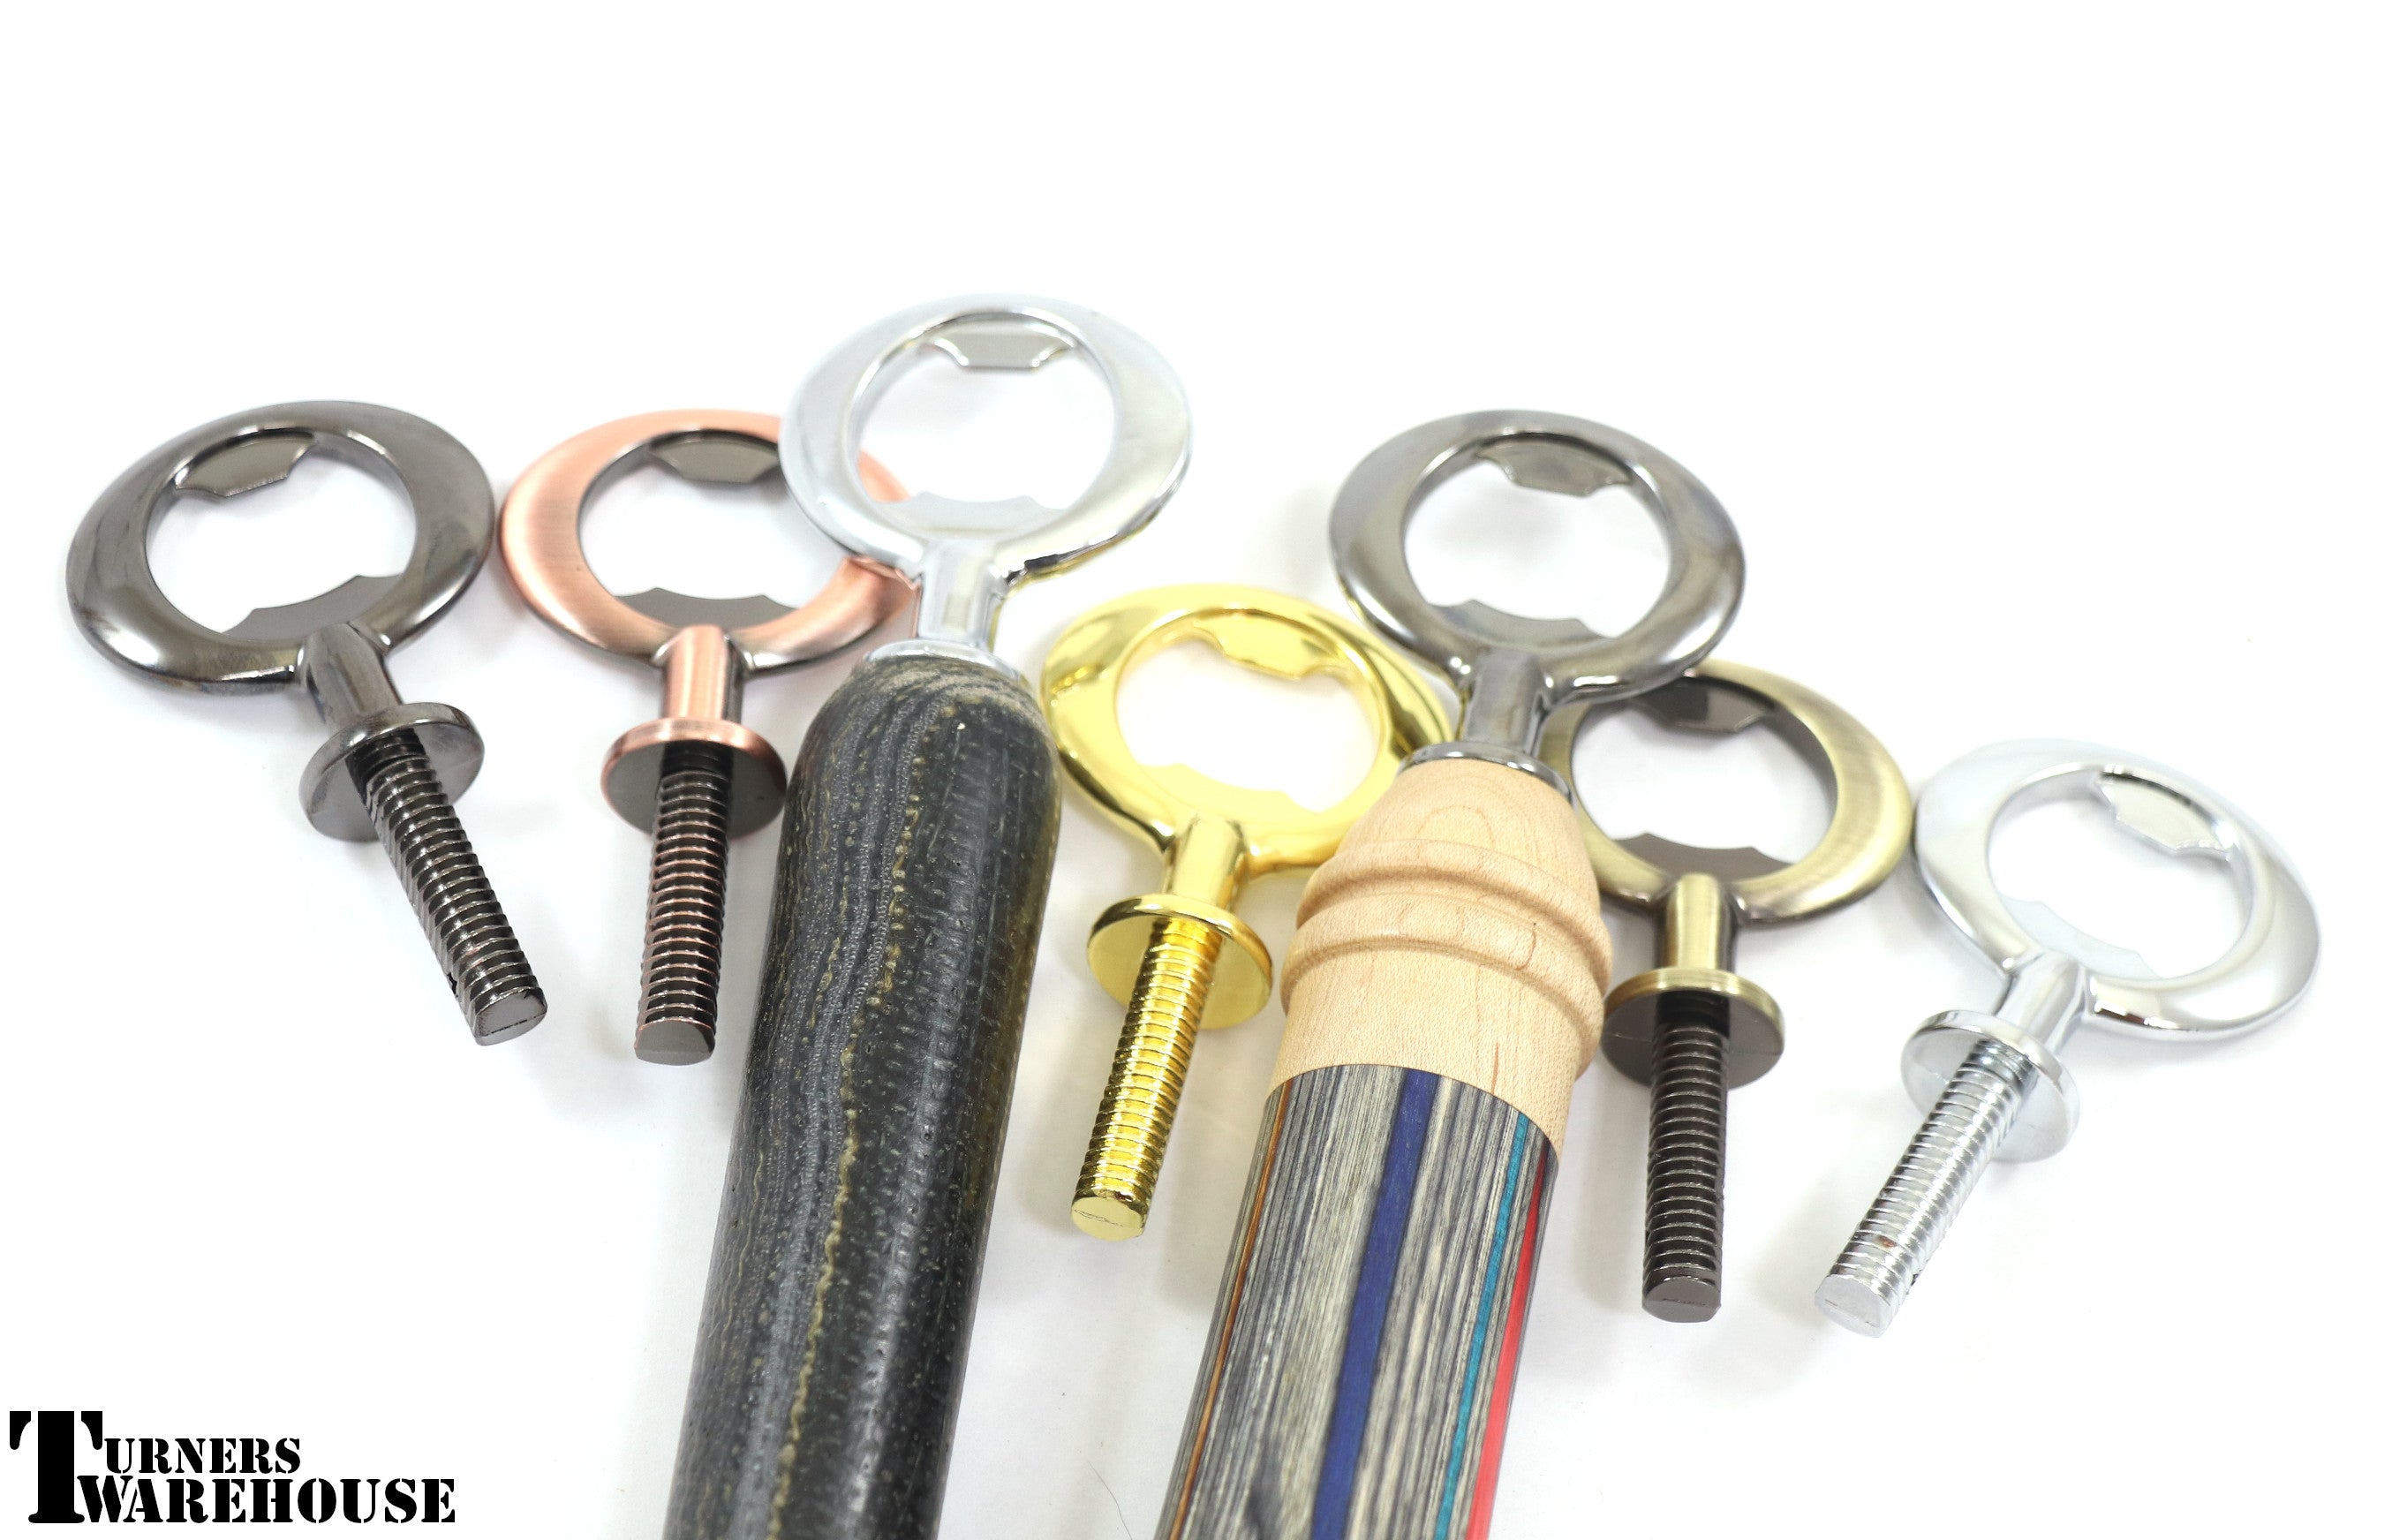 4 Bottle Opener Keychain Kit Starter Set at Penn State Industries